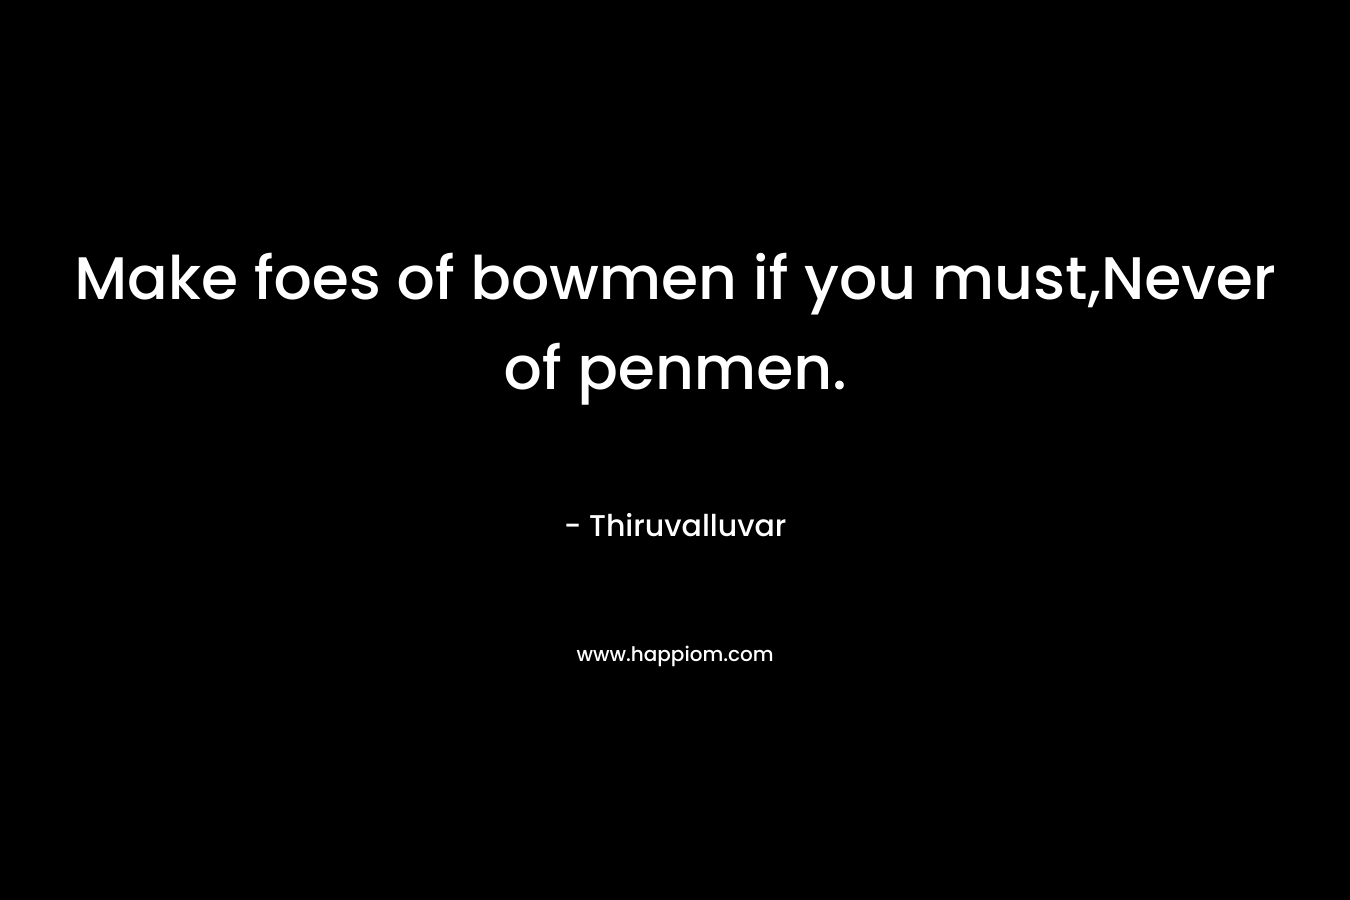 Make foes of bowmen if you must,Never of penmen. – Thiruvalluvar